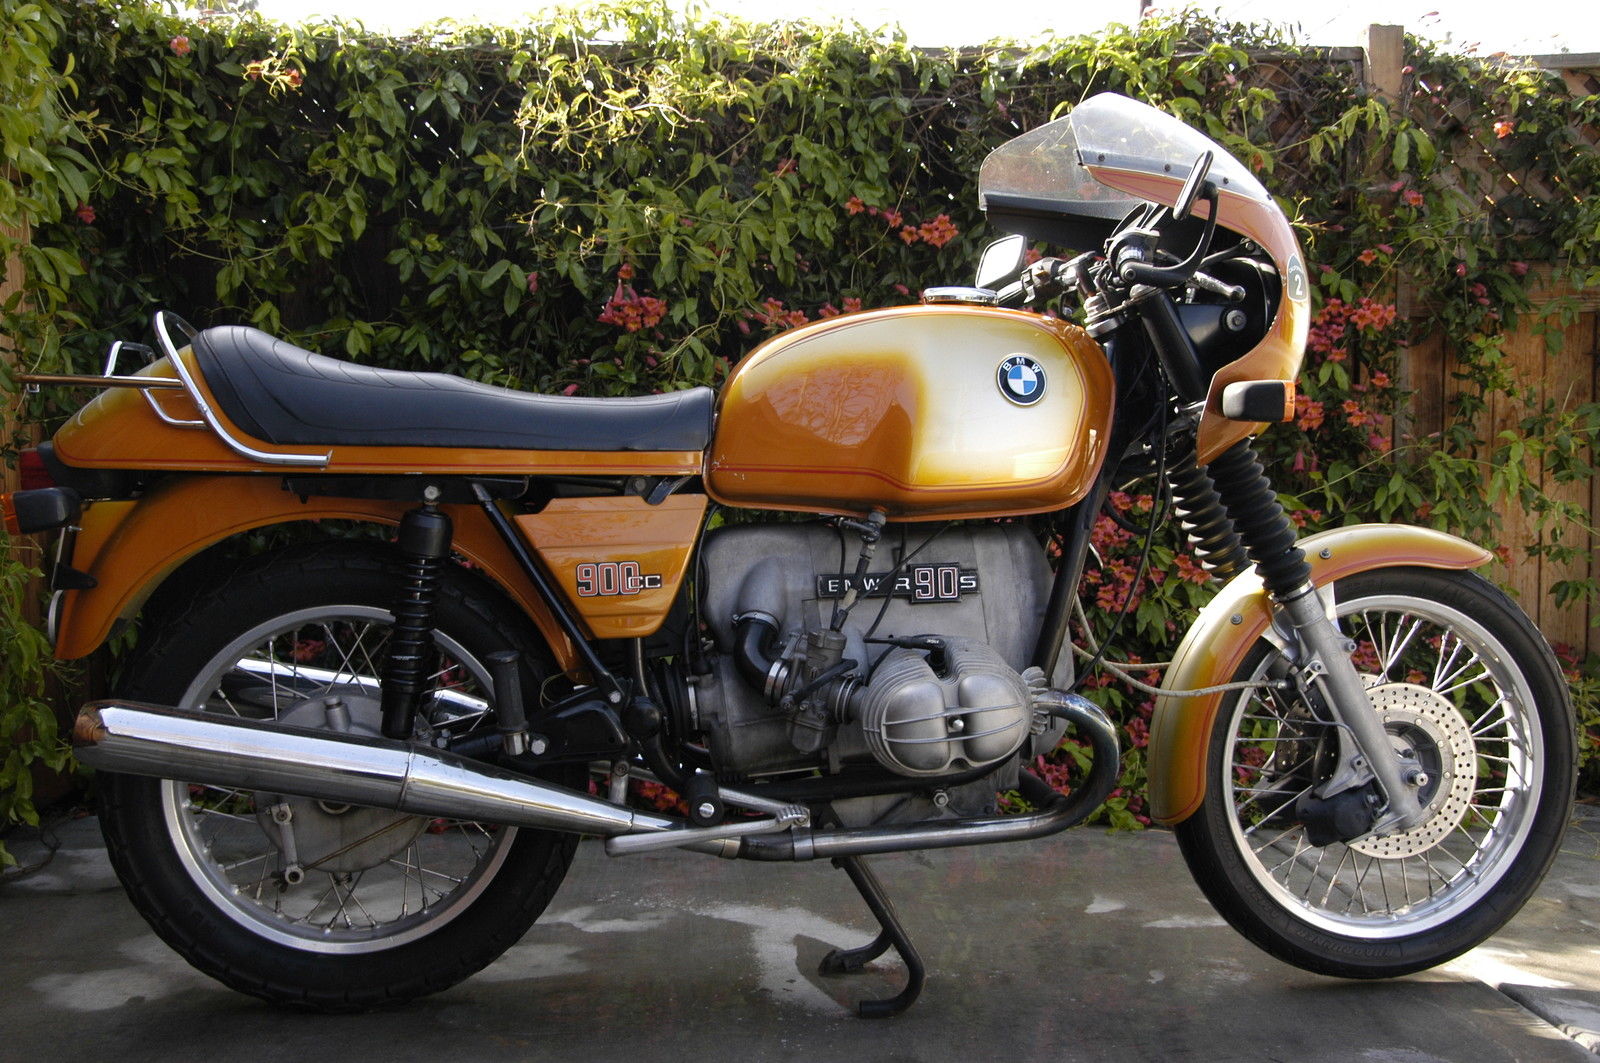 Bmw daytona orange motorycyle #2